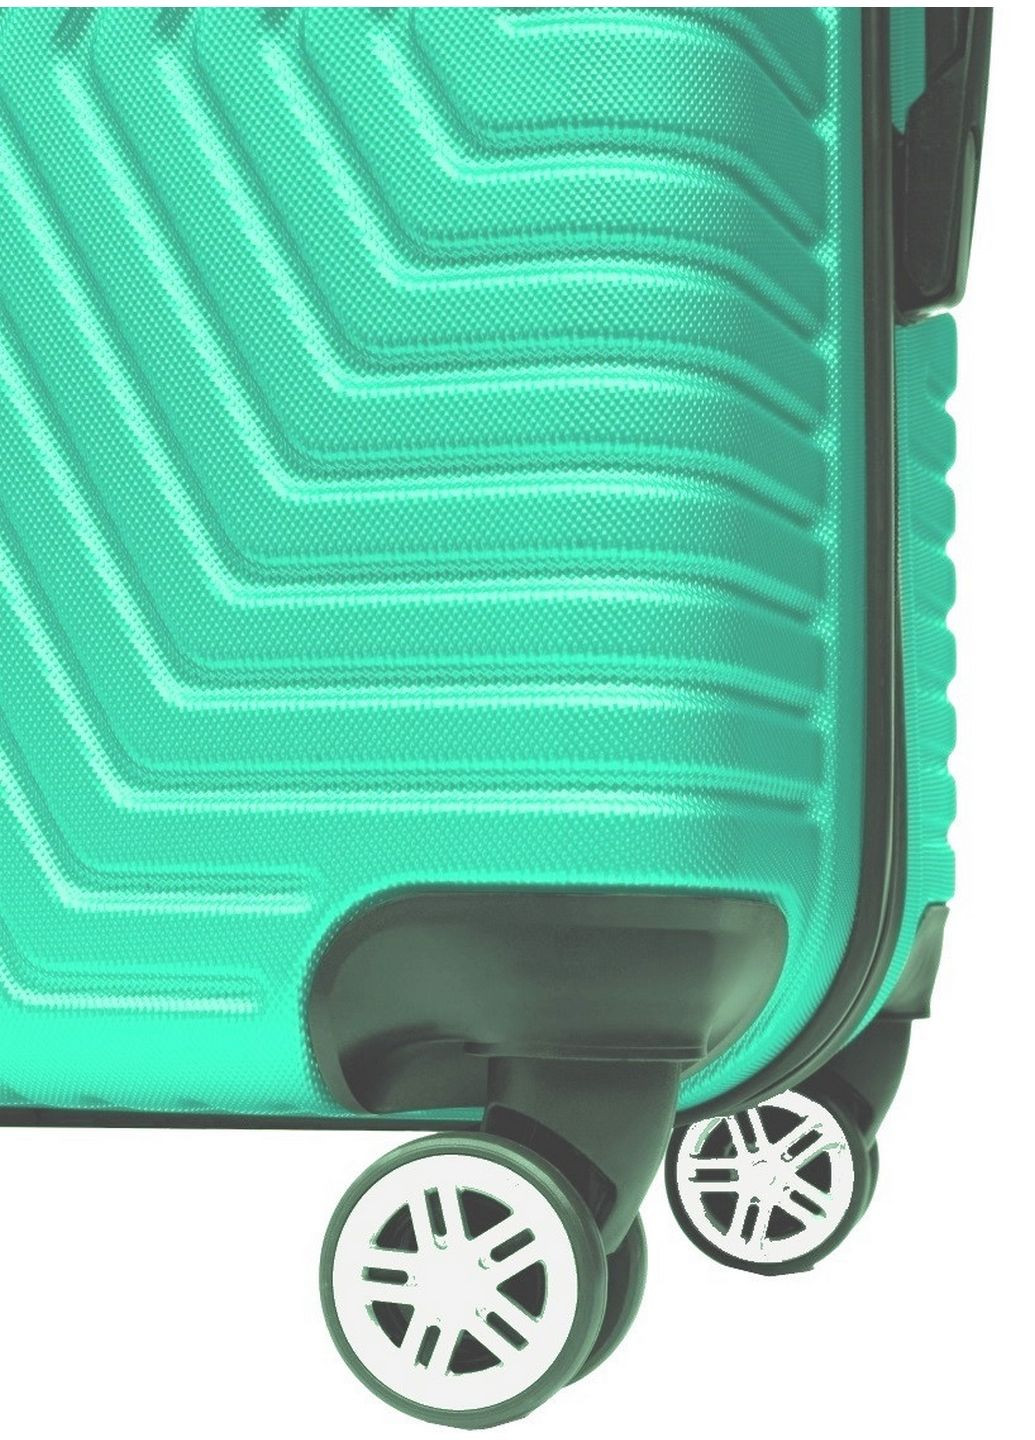 Пластиковый чемодан на колесах средний размер 70L 66х42х28 см GD Polo (289363878)